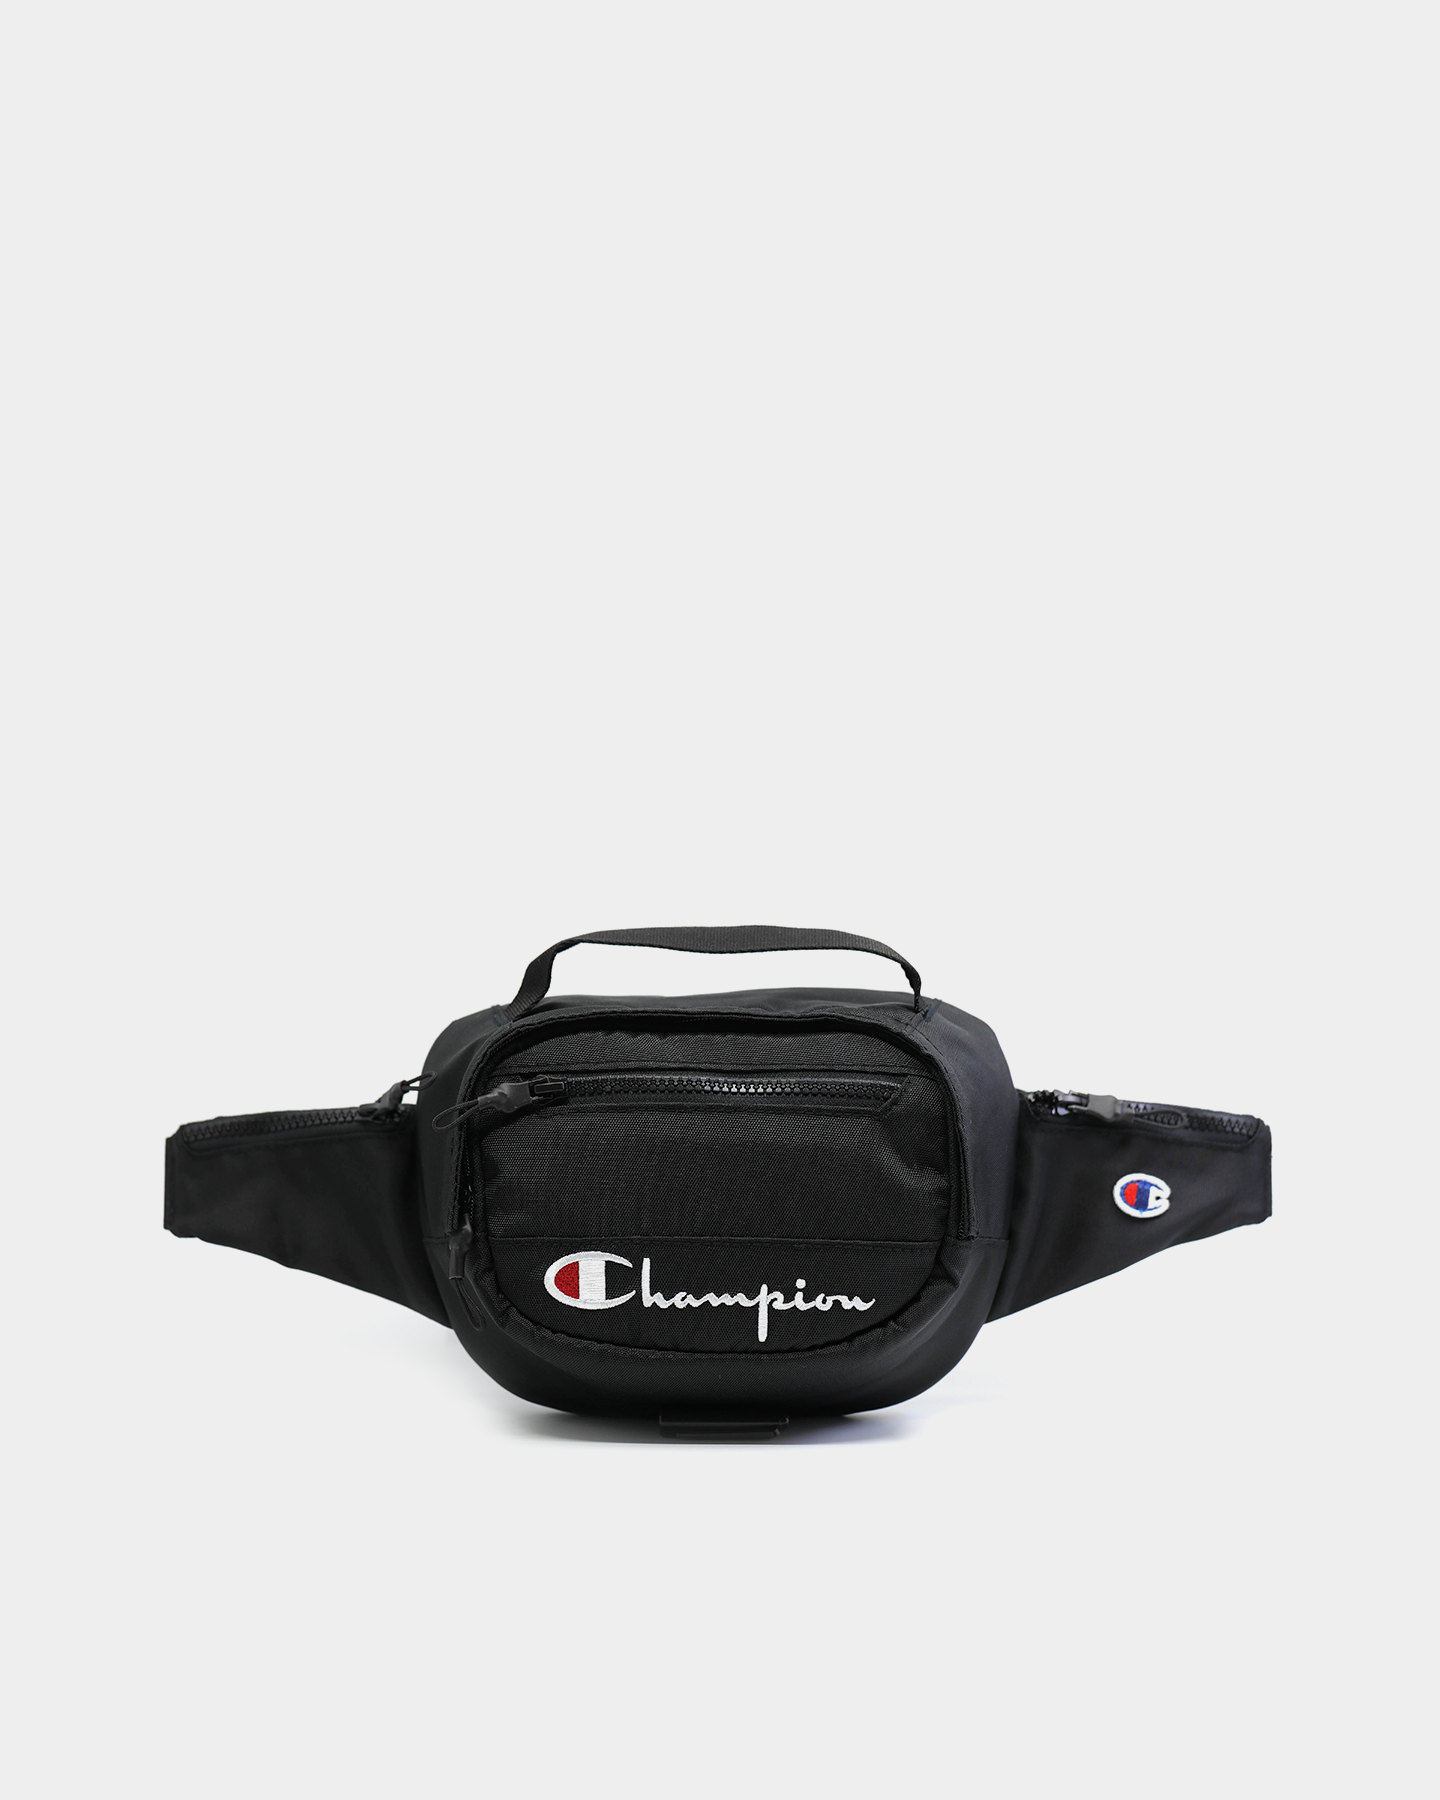 champion belt bag black